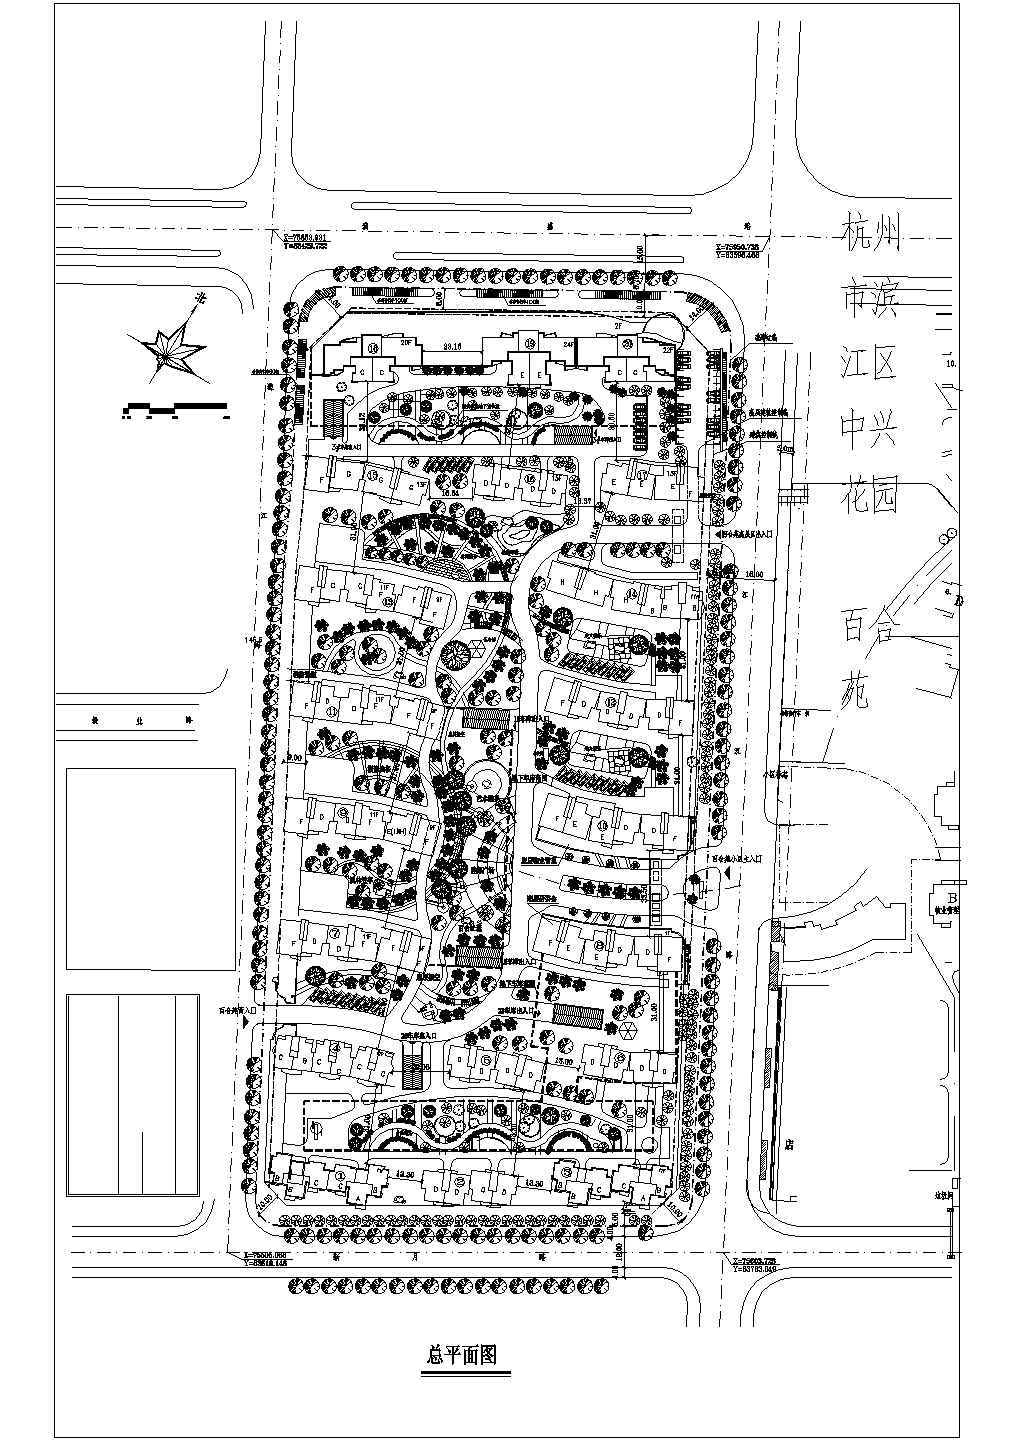 【杭州市】滨江区中性花园百合苑规划总平面图